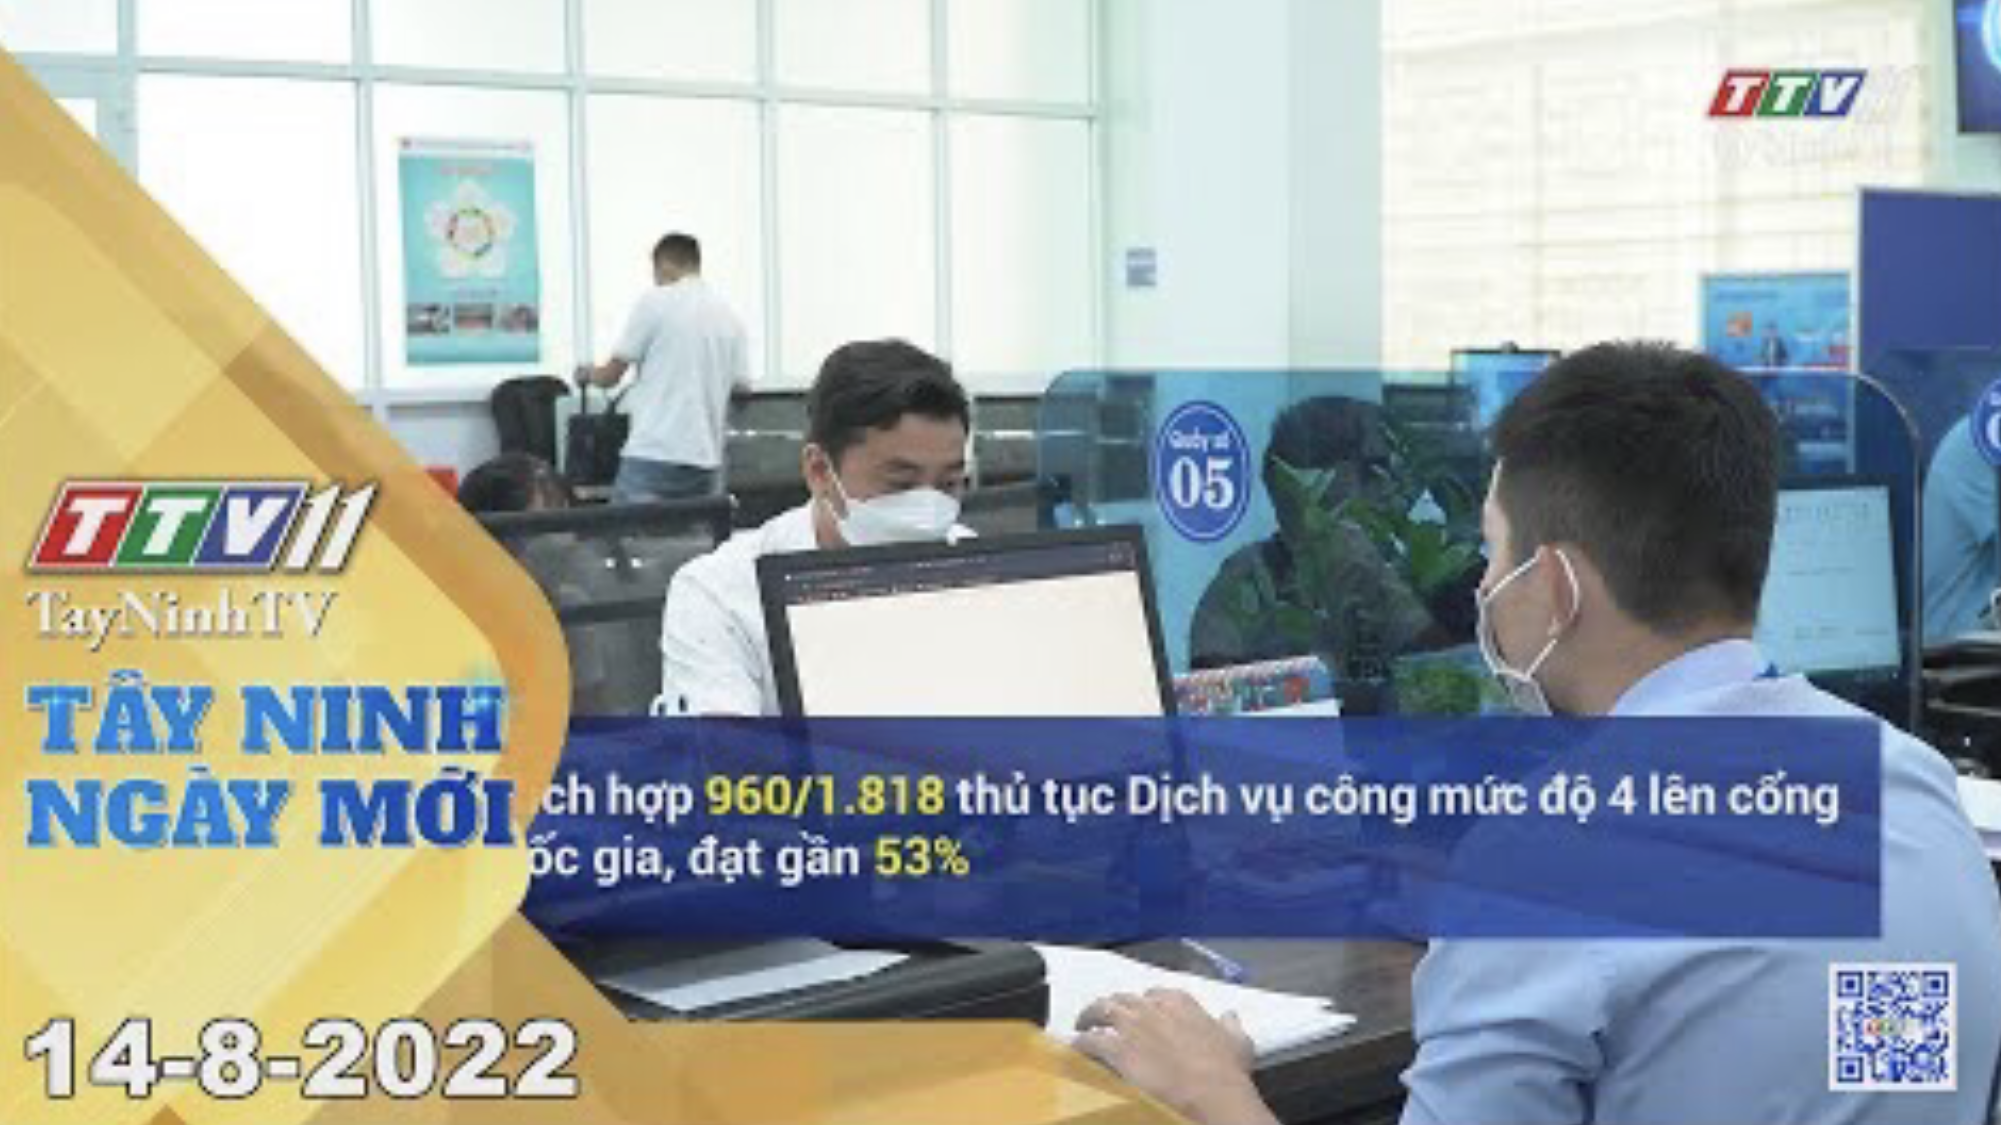 Tây Ninh ngày mới 14-8-2022 | Tin tức hôm nay | TayNinhTV